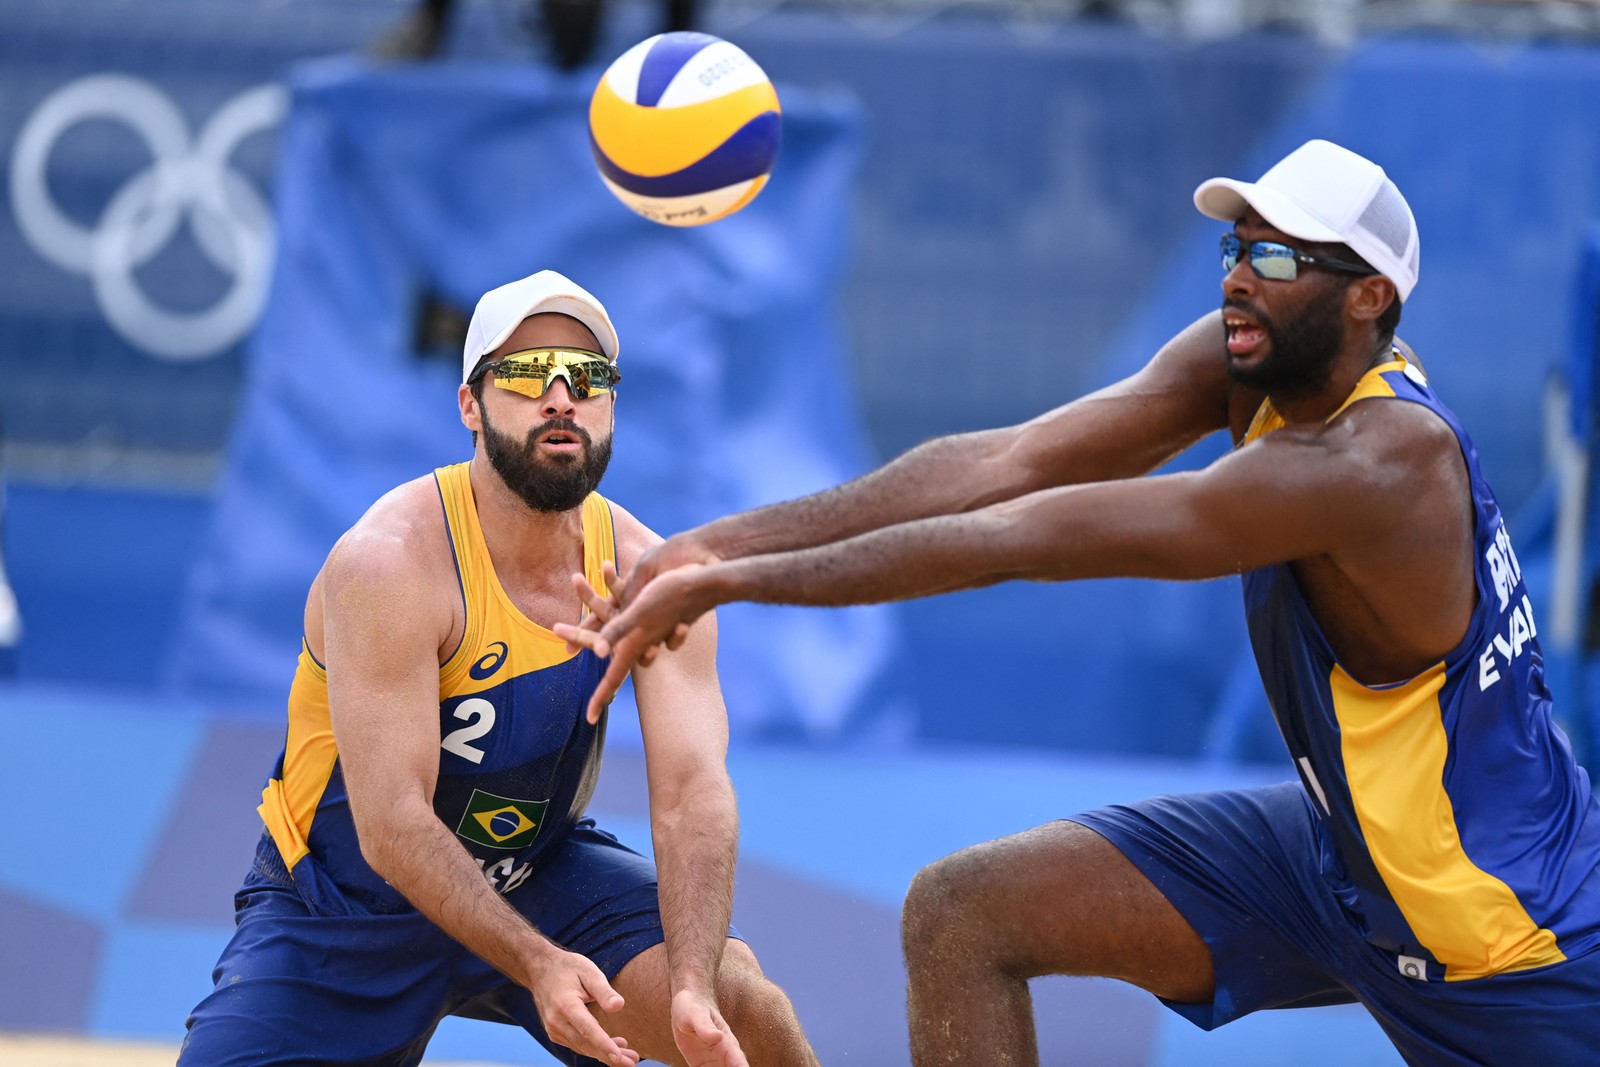 A dupla brasileira Evandro e Bruno do vôlei de praia perdeu para a Letônia por 2 sets a 0. Após essa derrota, eles se despedem dos Jogos de TóquioAFP